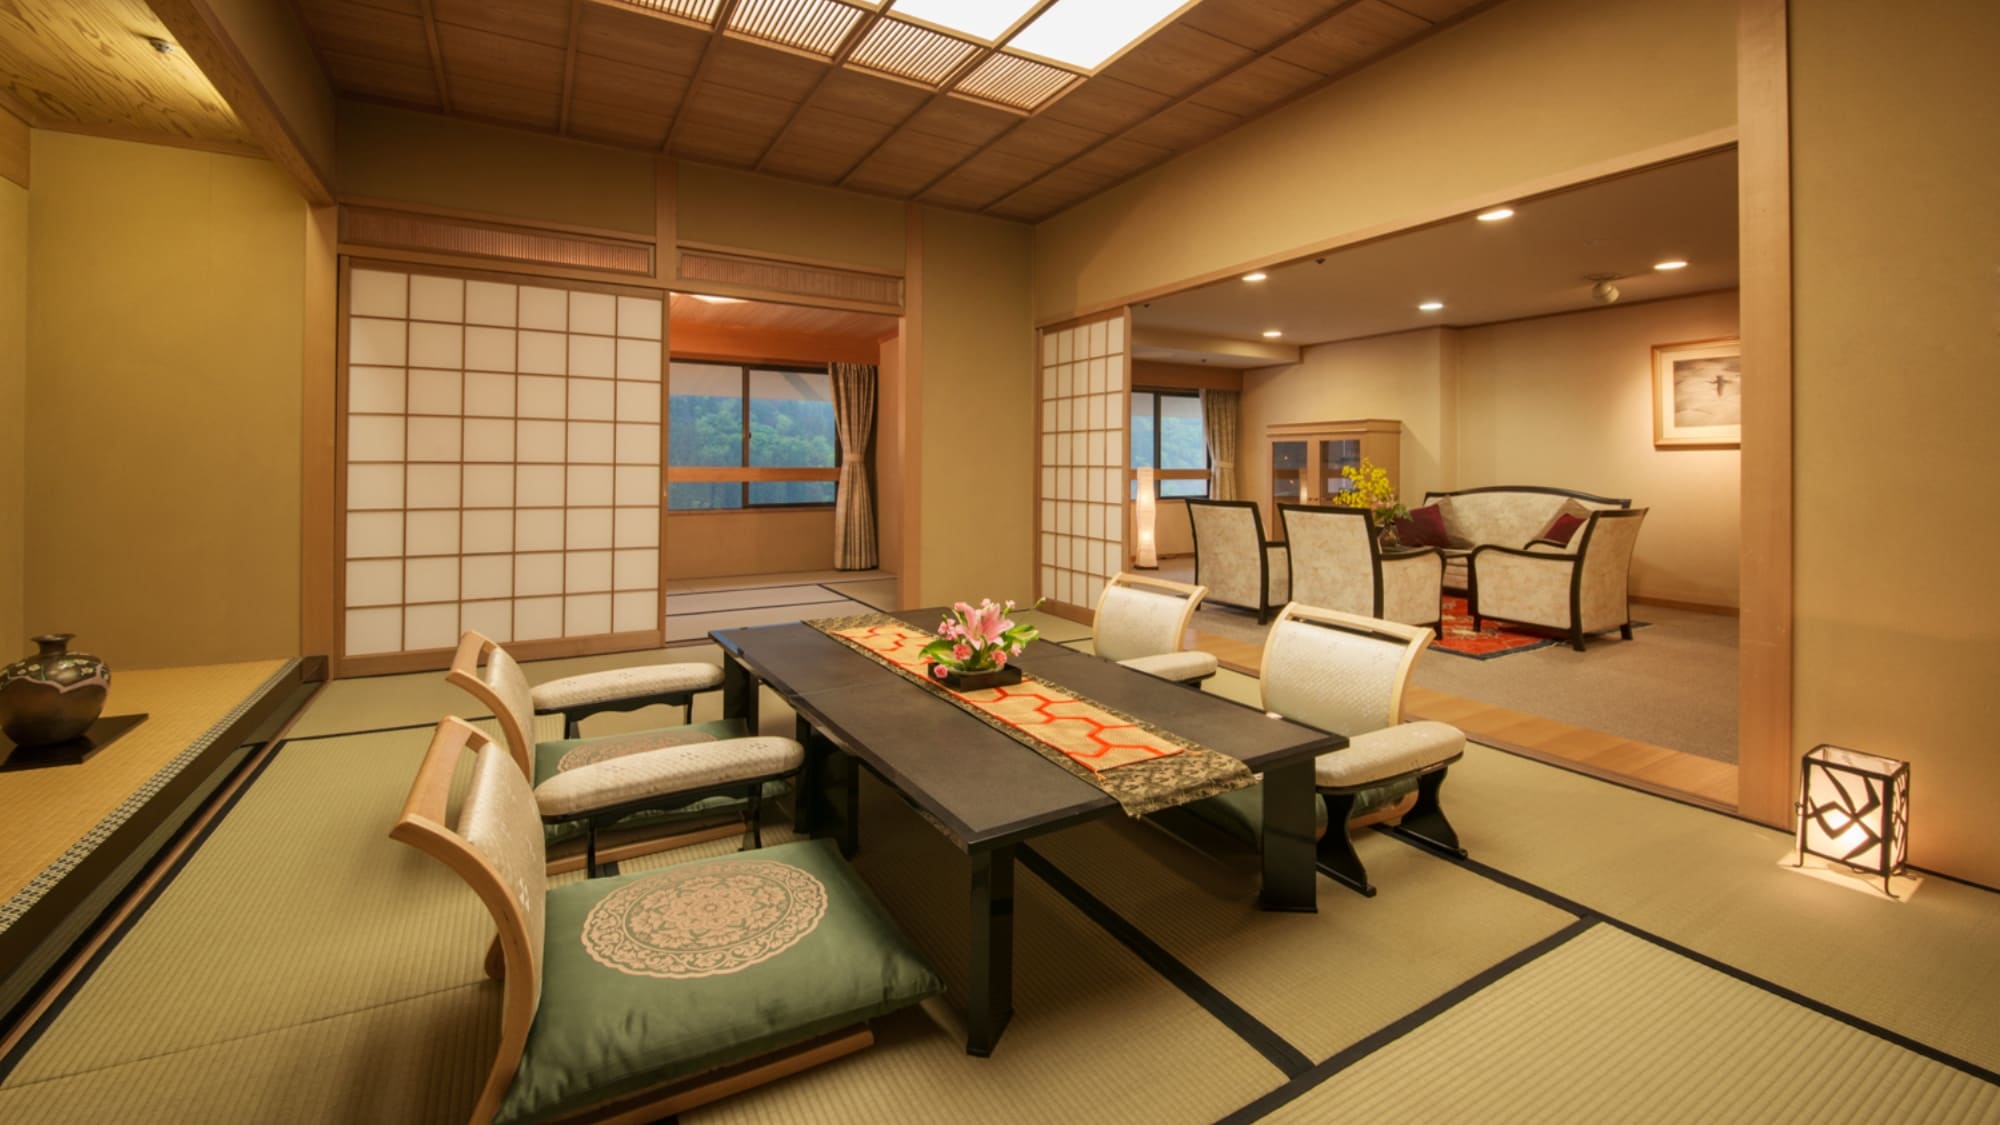  ห้องพิเศษ "Kikusui" ที่ชั้นบนสุดของ Daikanso ◆ ห้องสไตล์ญี่ปุ่นขอบกว้าง 12 เสื่อทาทามิ + 6 เสื่อทาทามิ ◆